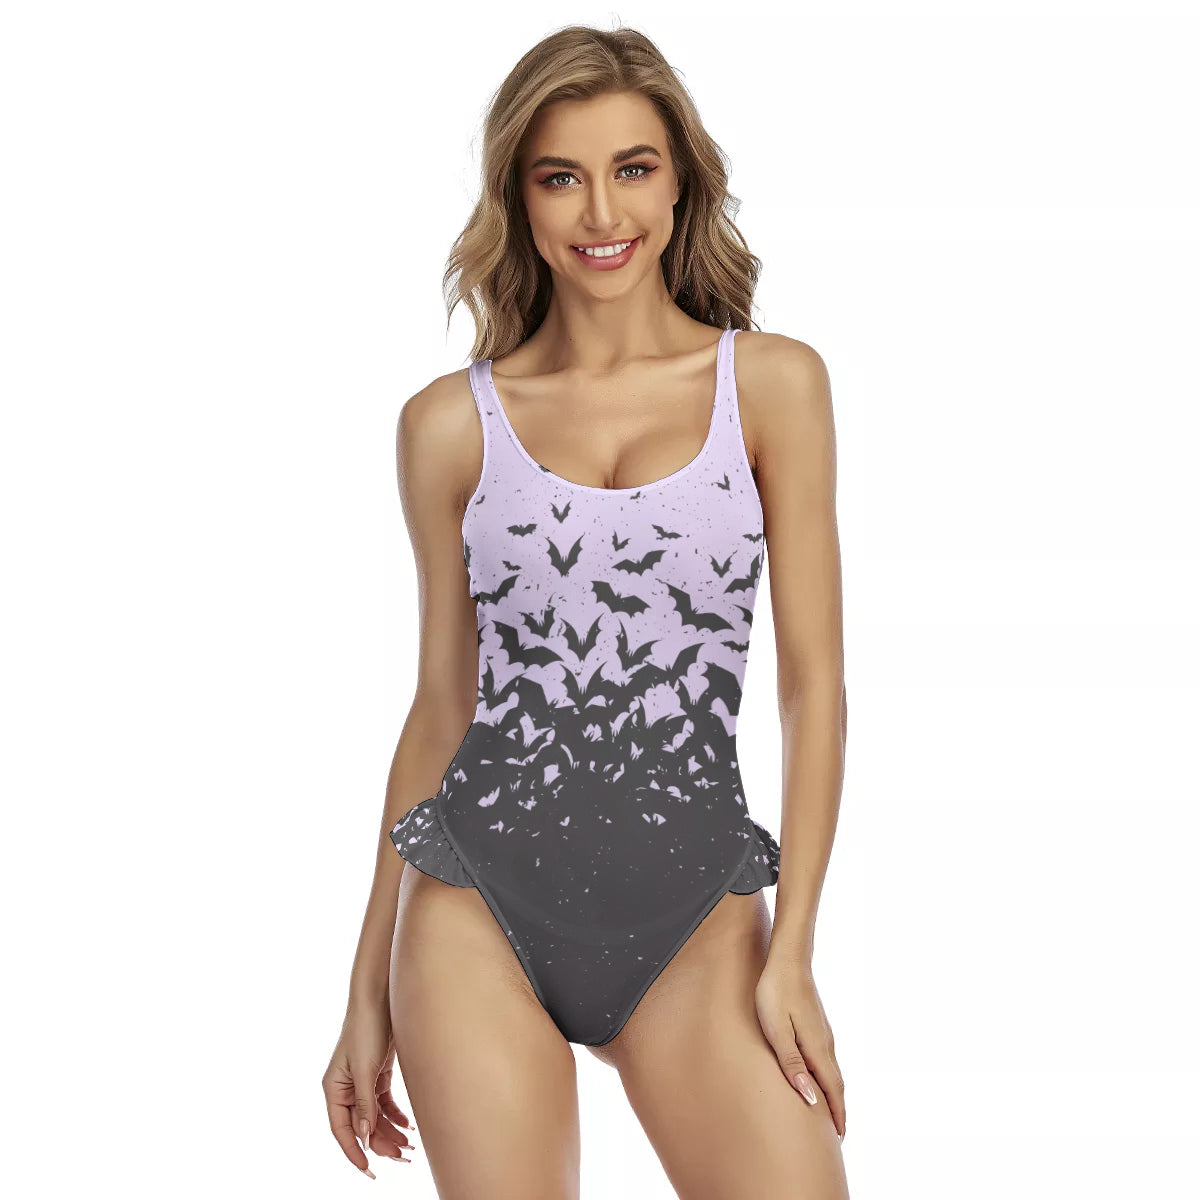 All-Over Print Women's Ruffle Hem Swimsuit - NeoSkull